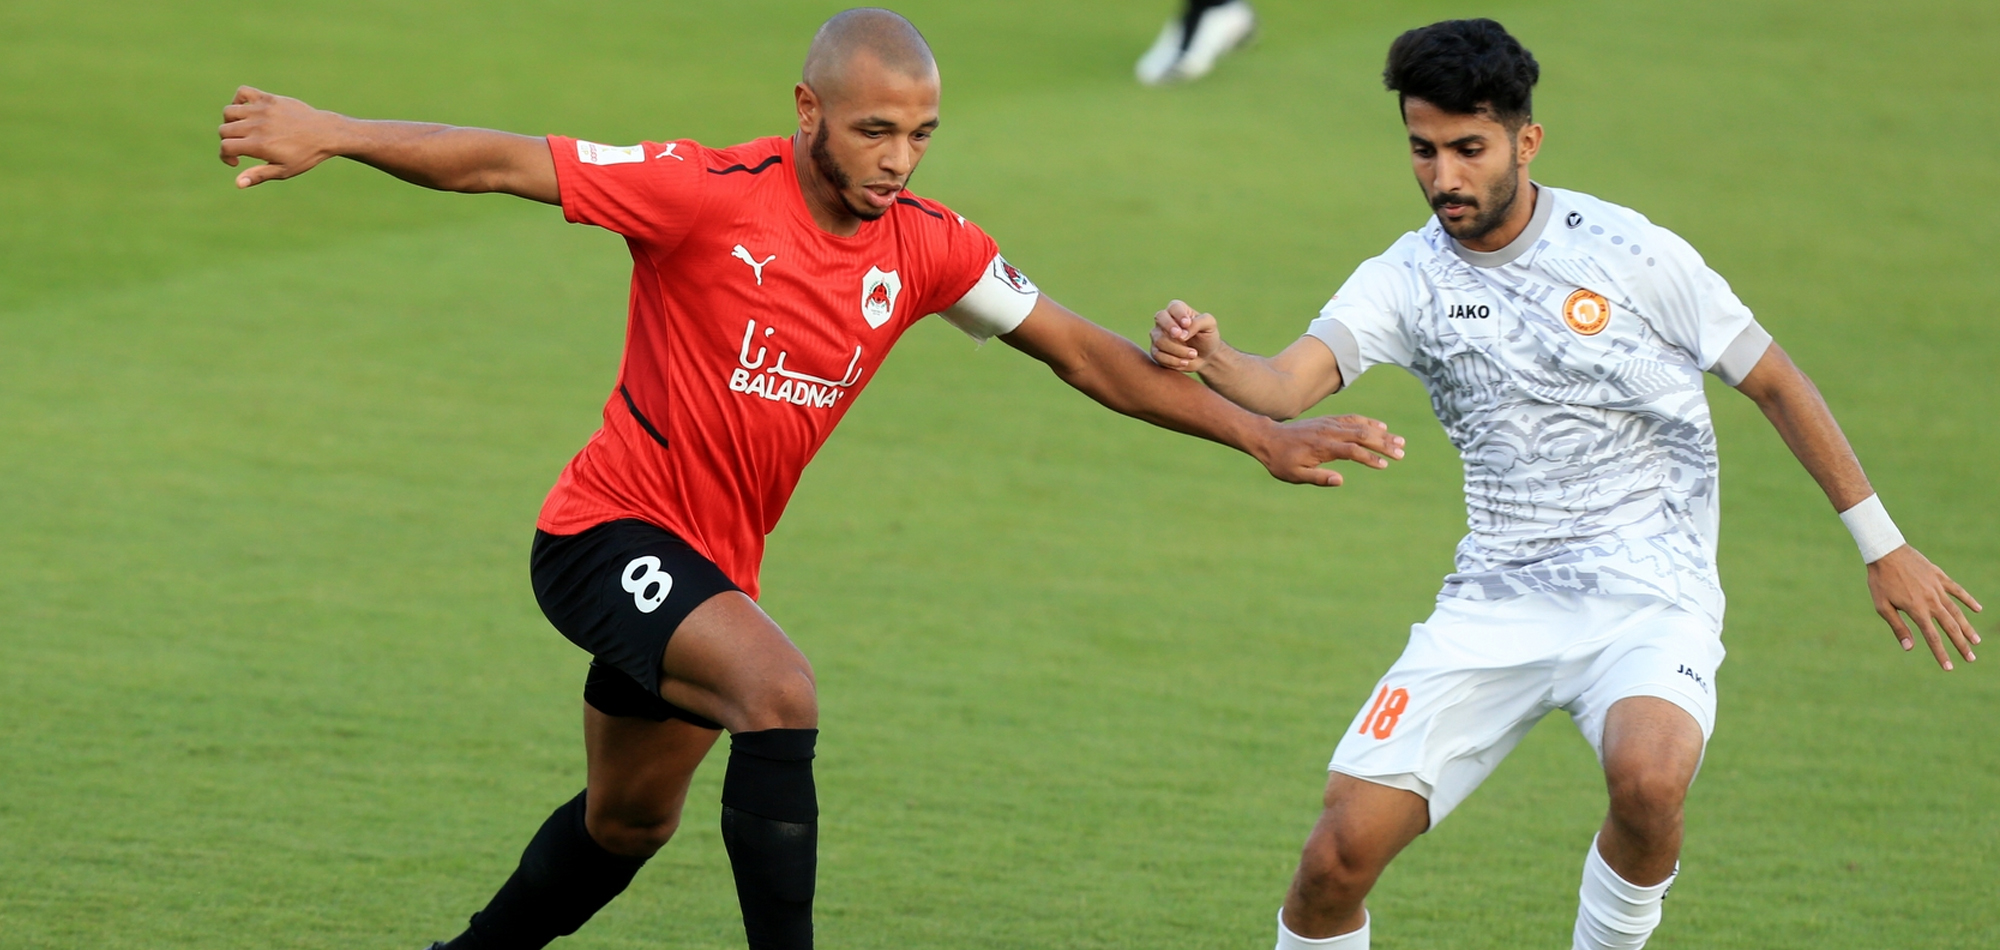 Ooredoo Cup Round 4 – Al Rayyan 1 Umm Salal 2